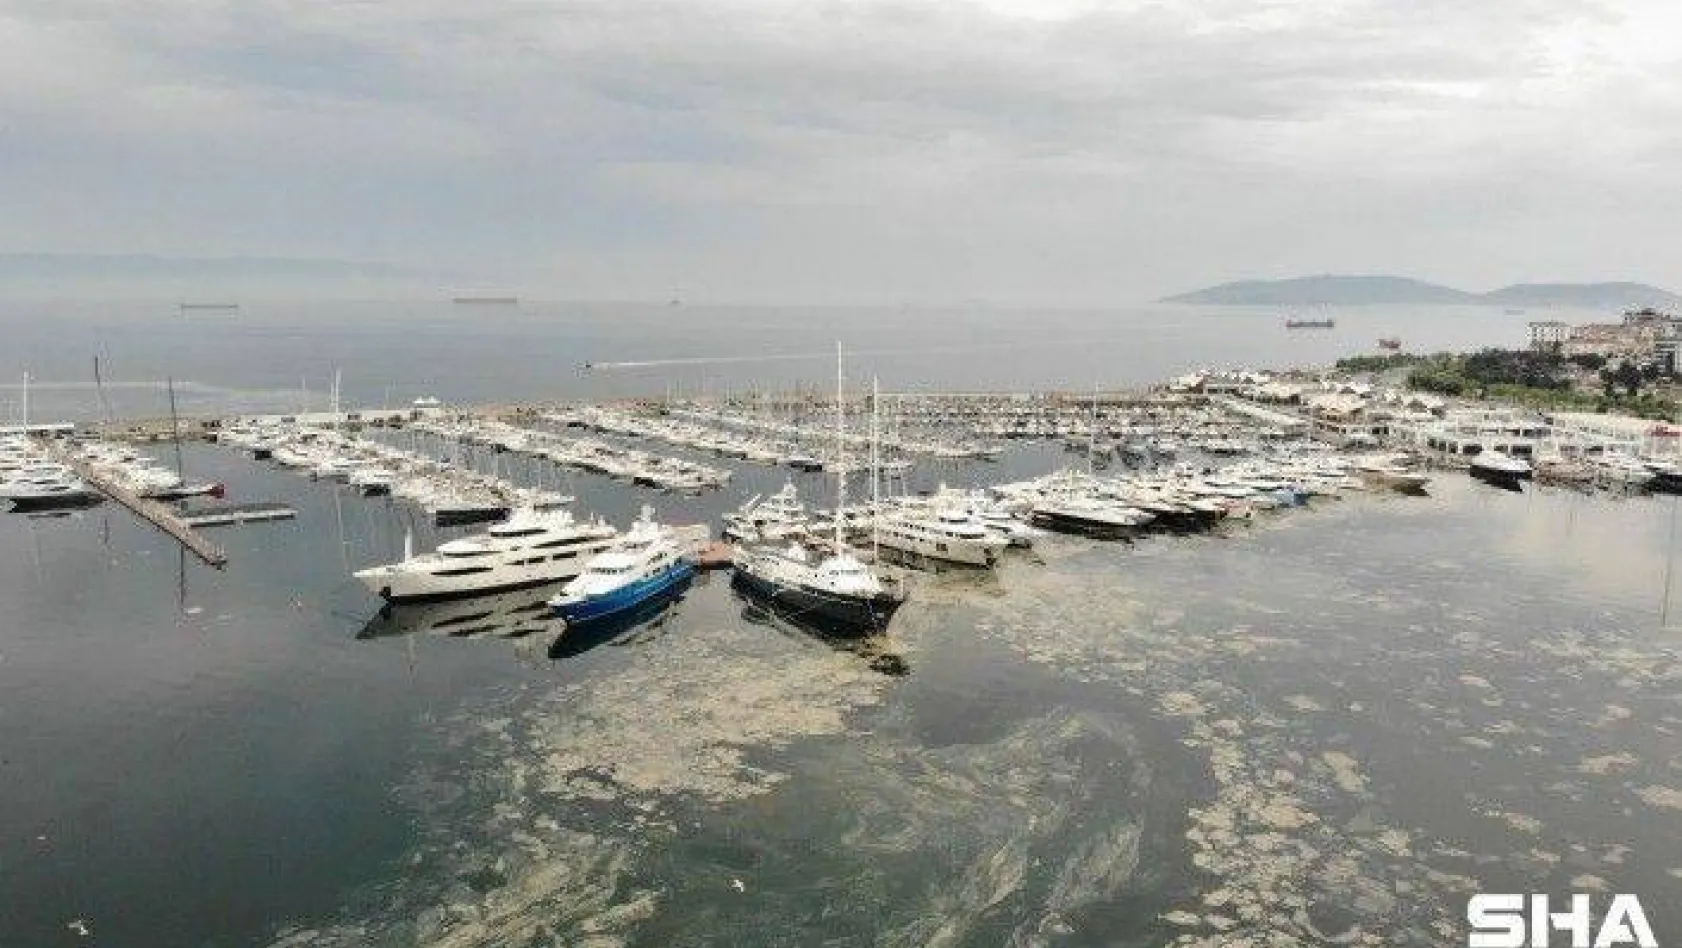 Pendik Marinada denizi kaplayan deniz salyaları havadan görüntülendi